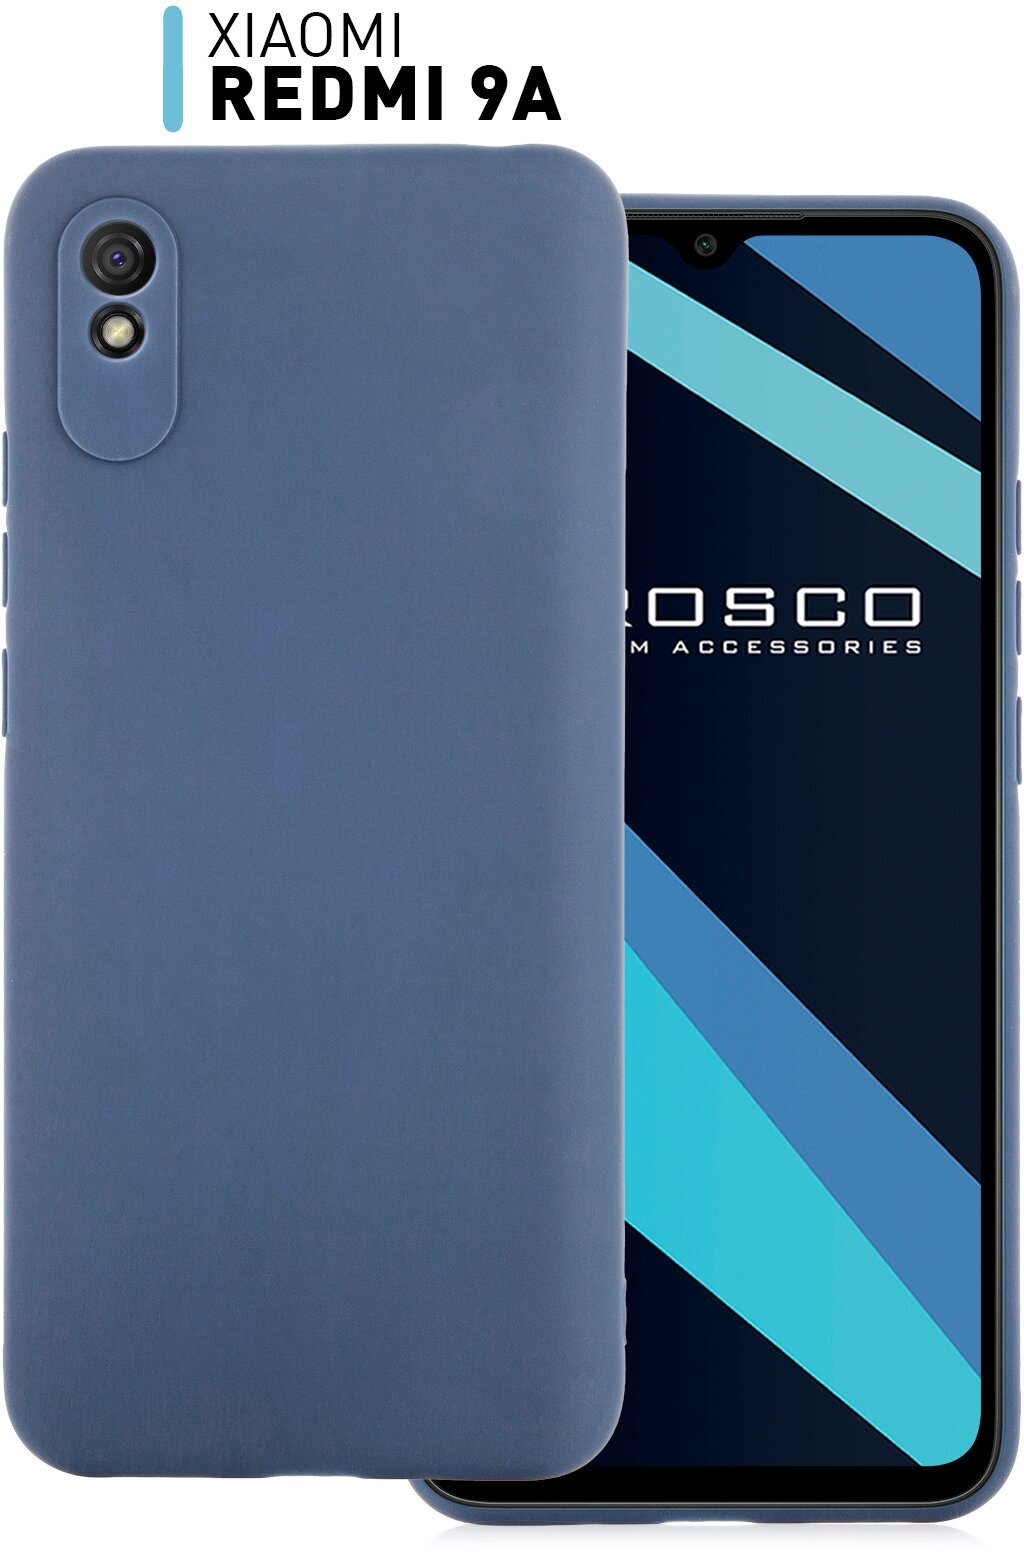 Матовый силиконовый чехол ROSCO для Xiaomi Redmi 9A (Сяоми Редми 9А, Ксиаоми), синий